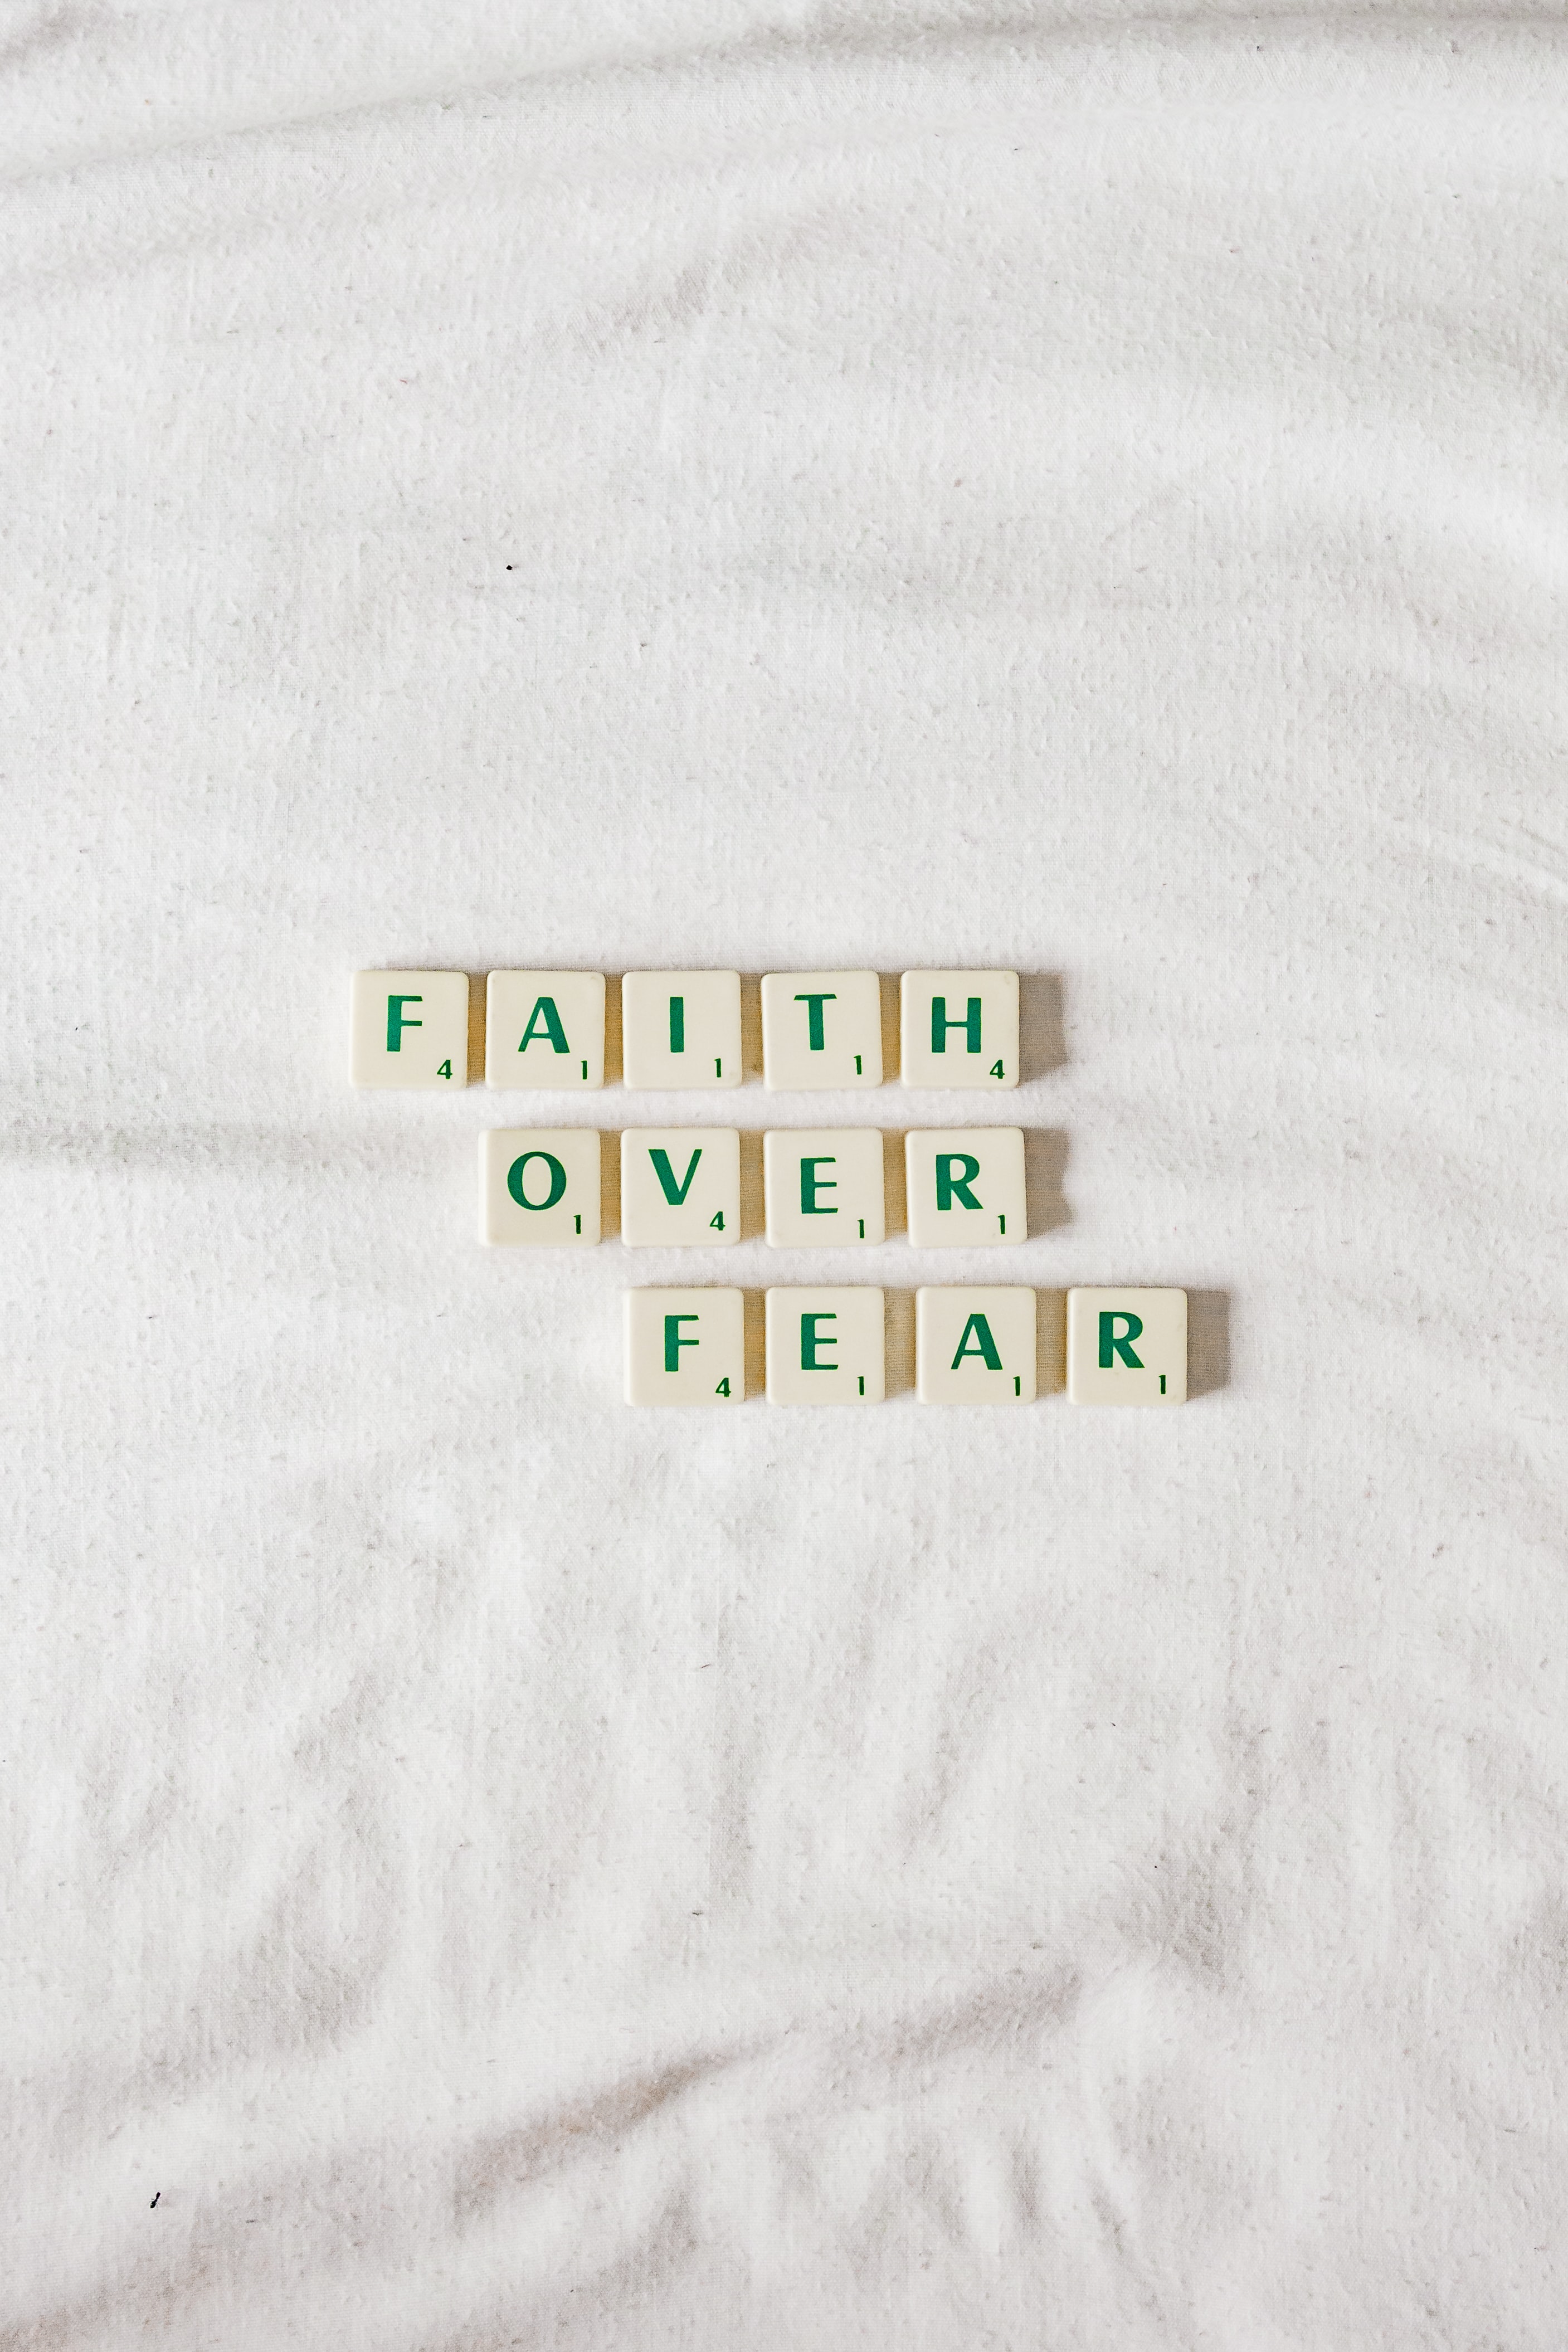 Faith over Fear Devo Pic